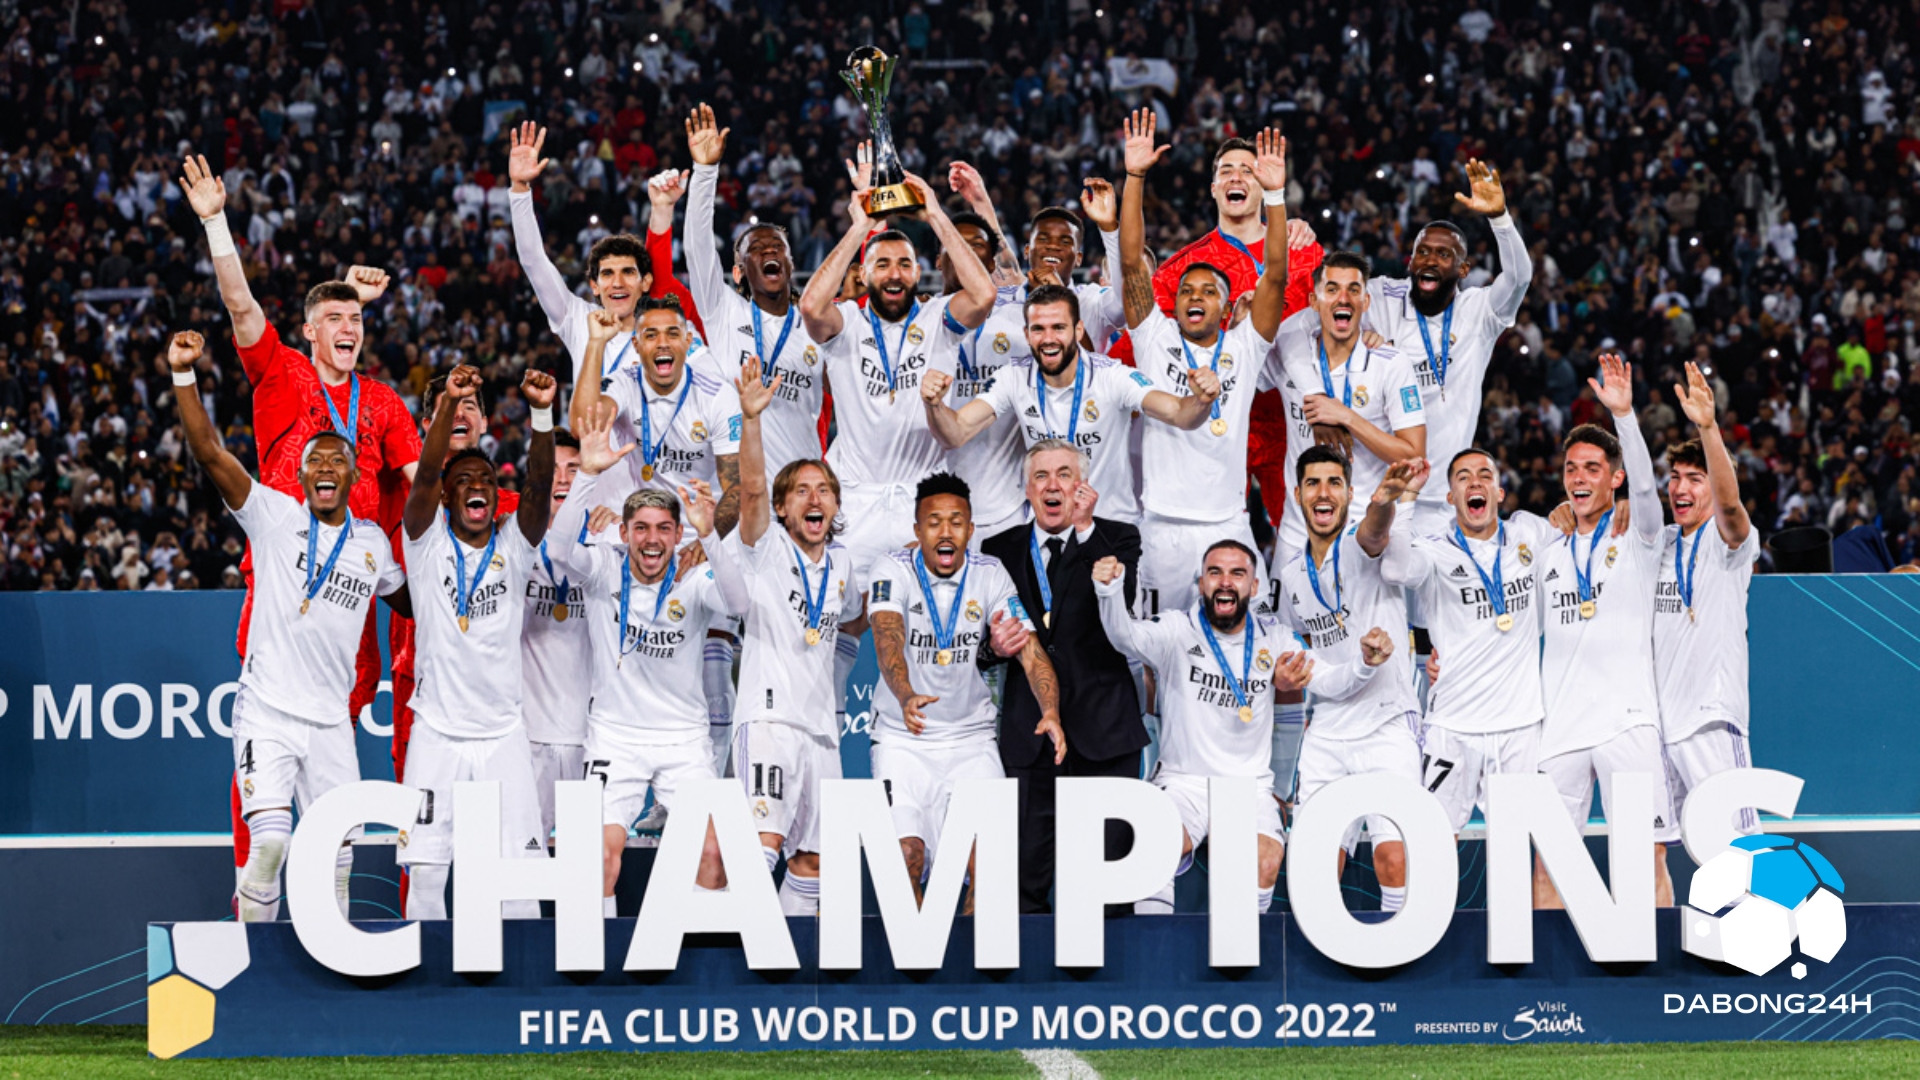 Real Madrid - Câu lạc bộ bóng đá nổi tiếng thế giới với lượng danh hiệu đáng kinh ngạc